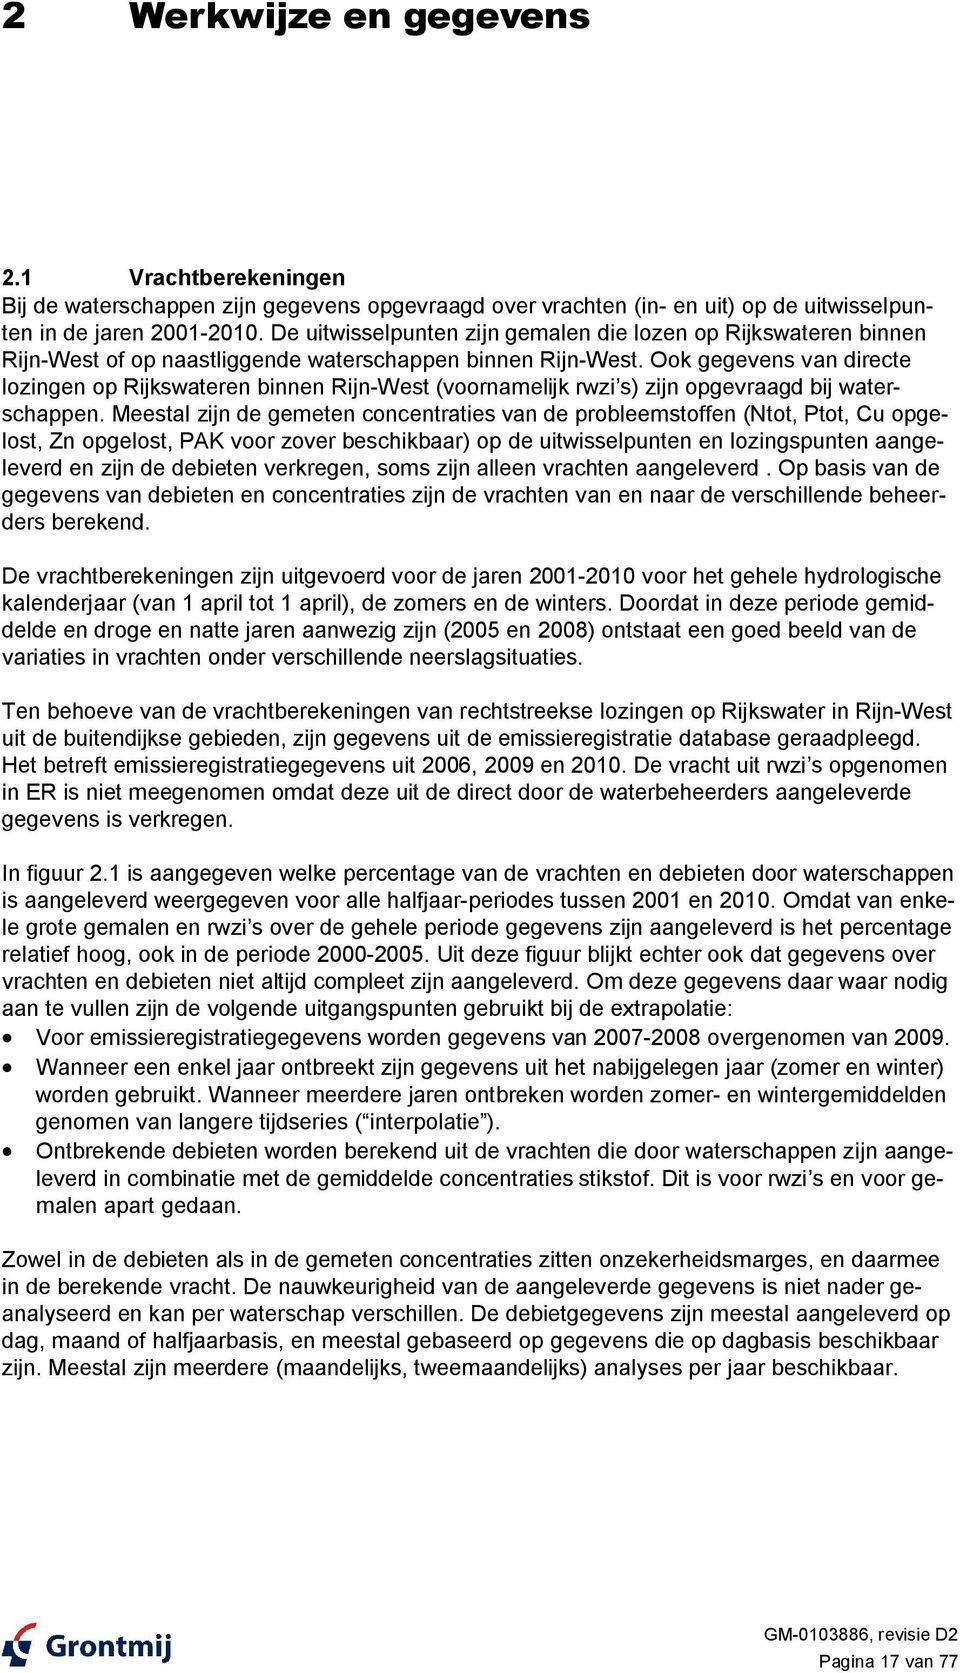 Ook gegevens van directe lozingen op Rijkswateren binnen Rijn-West (voornamelijk rwzi s) zijn opgevraagd bij waterschappen.